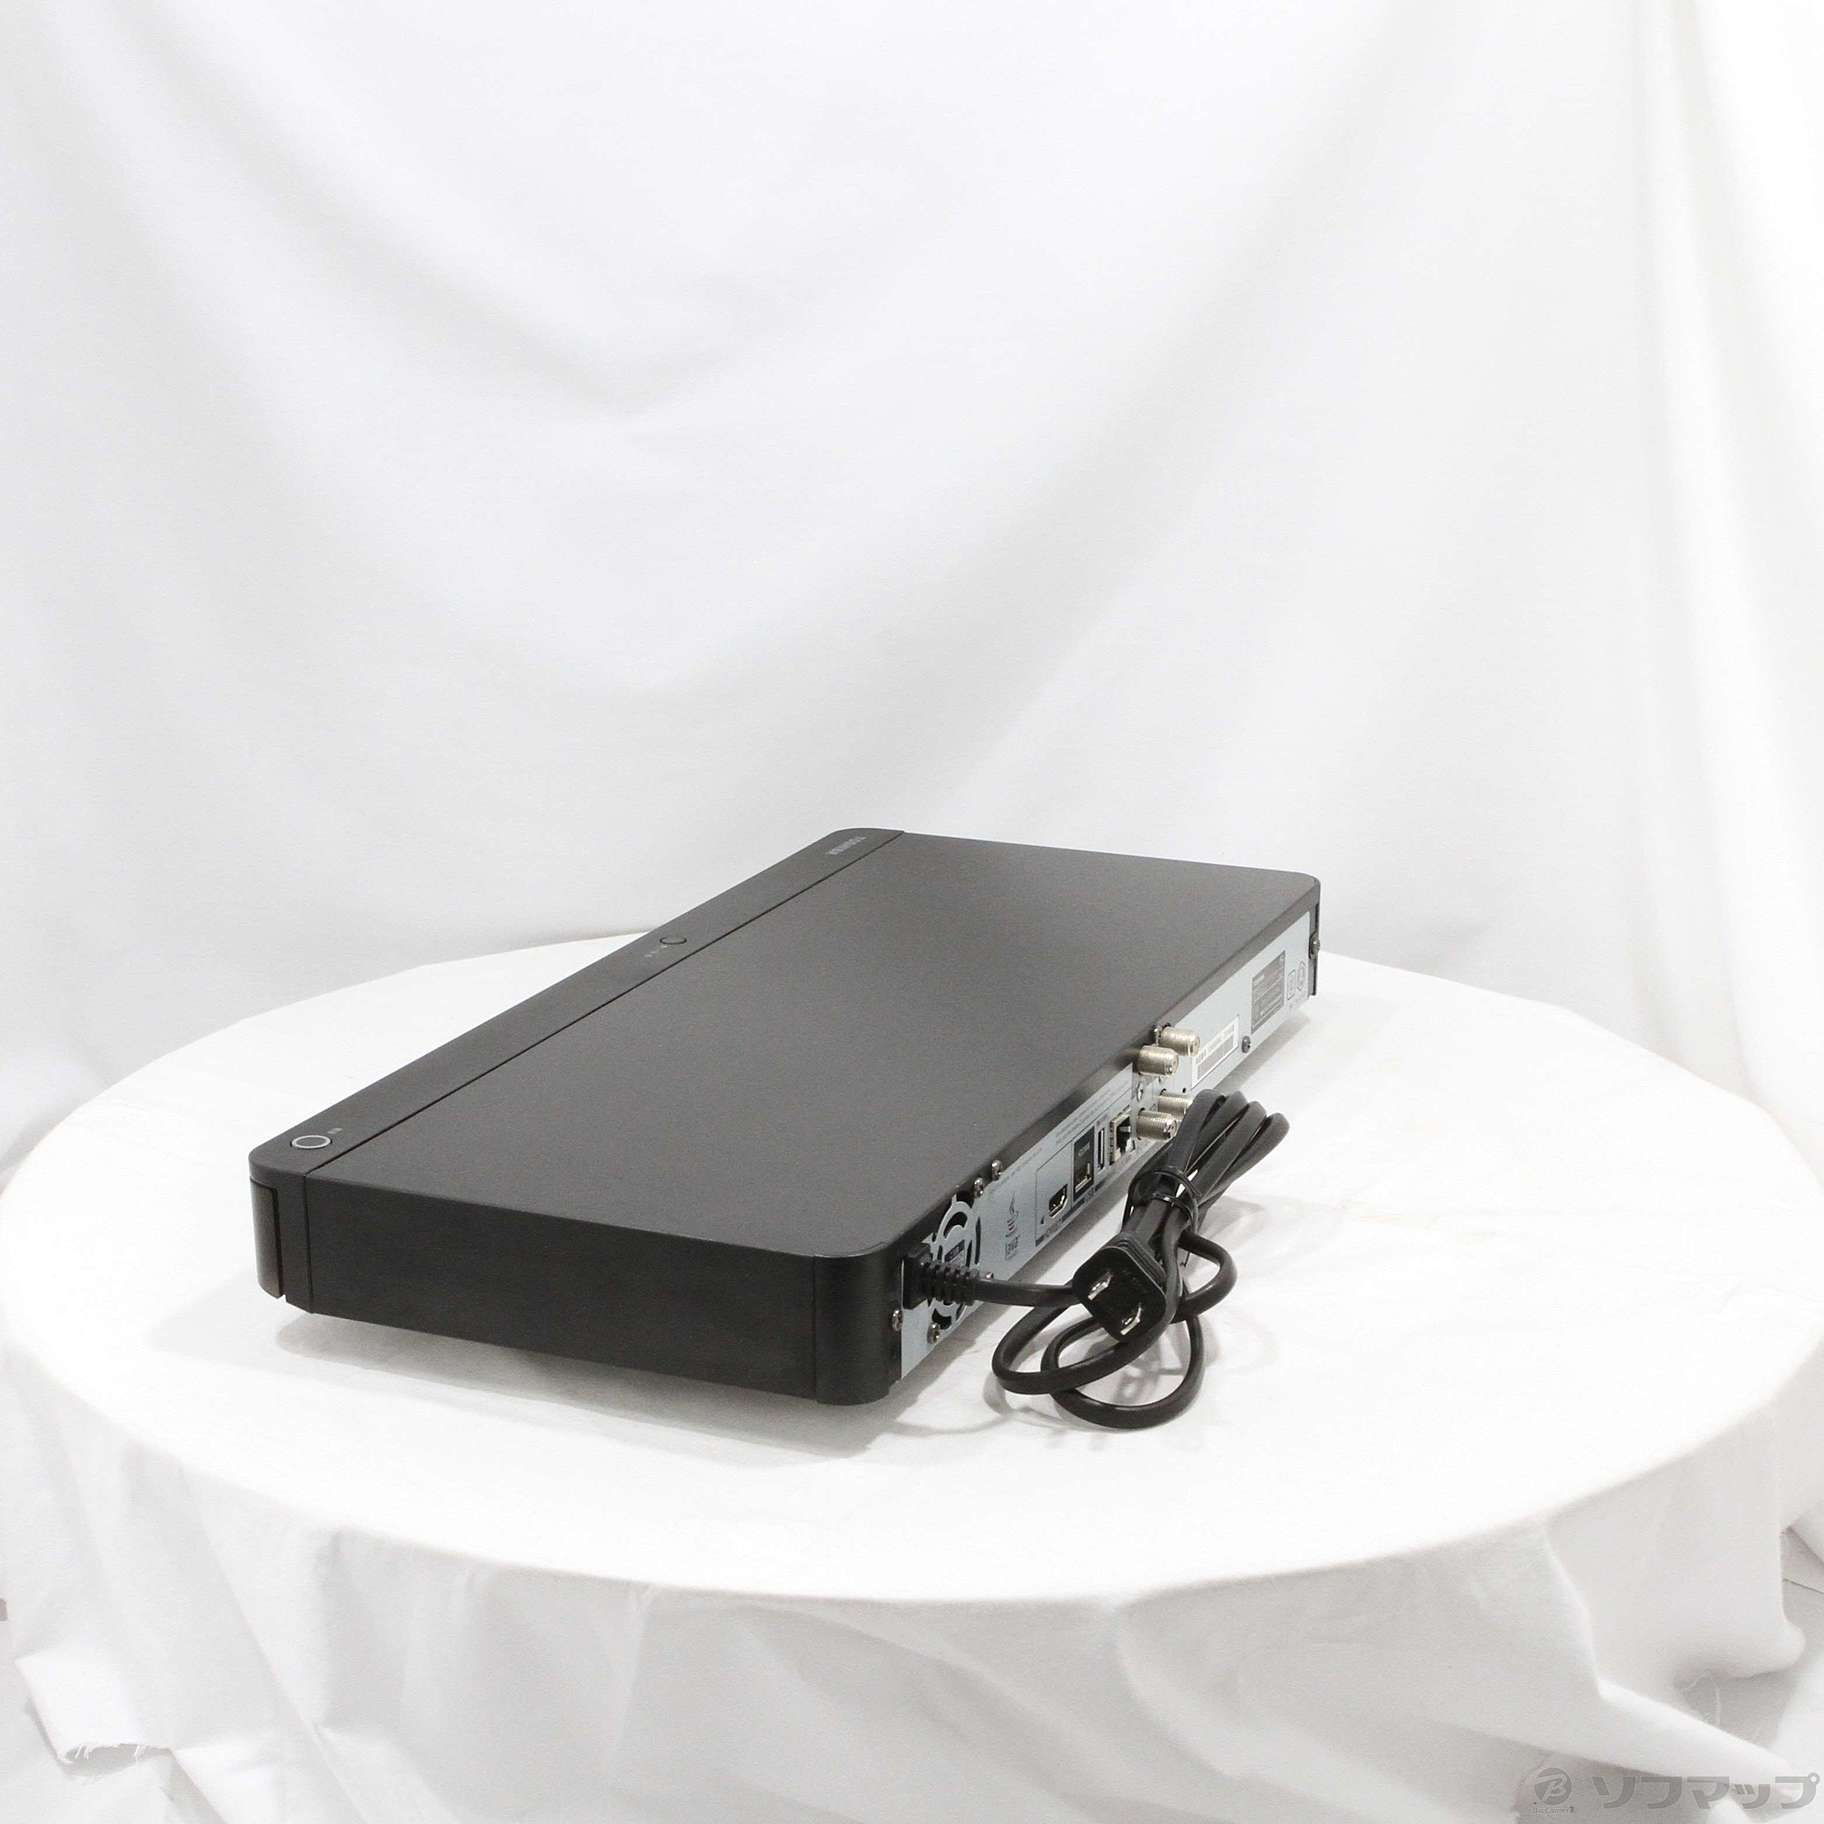 大阪本物東芝 500GB HDD内蔵ブルーレイレコーダー REGZA ブラック DBRW507 東芝